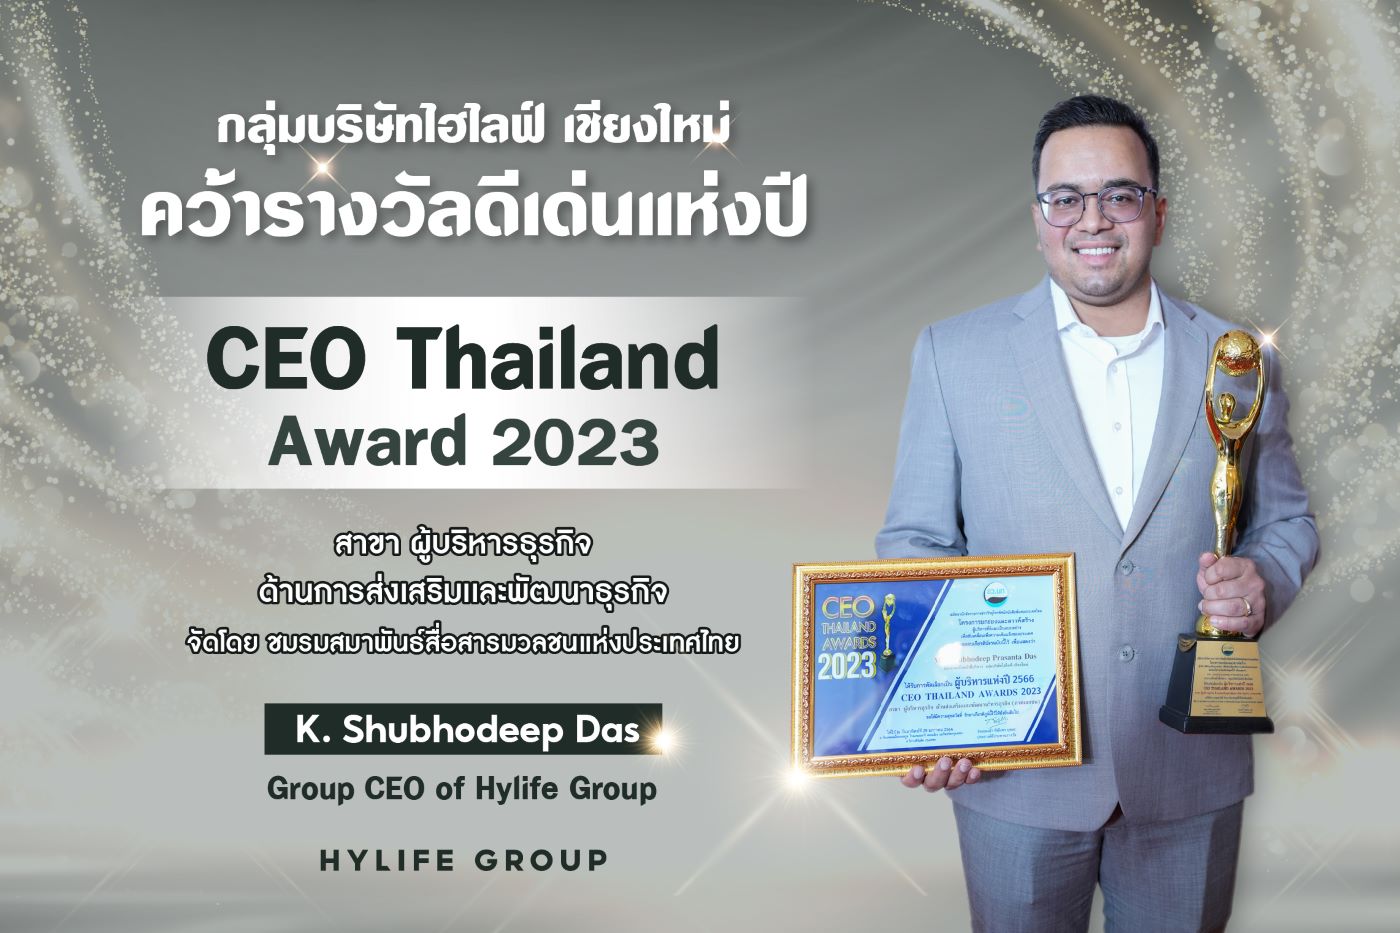 มร. ชูโบดีบ ดัส รับรางวัล CEO Thailand Award 2023 ตอกย้ำความเป็นผู้นำในกลุ่มธุรกิจภาคเอกชน จังหวัดเชียงใหม่ ประเทศไทย